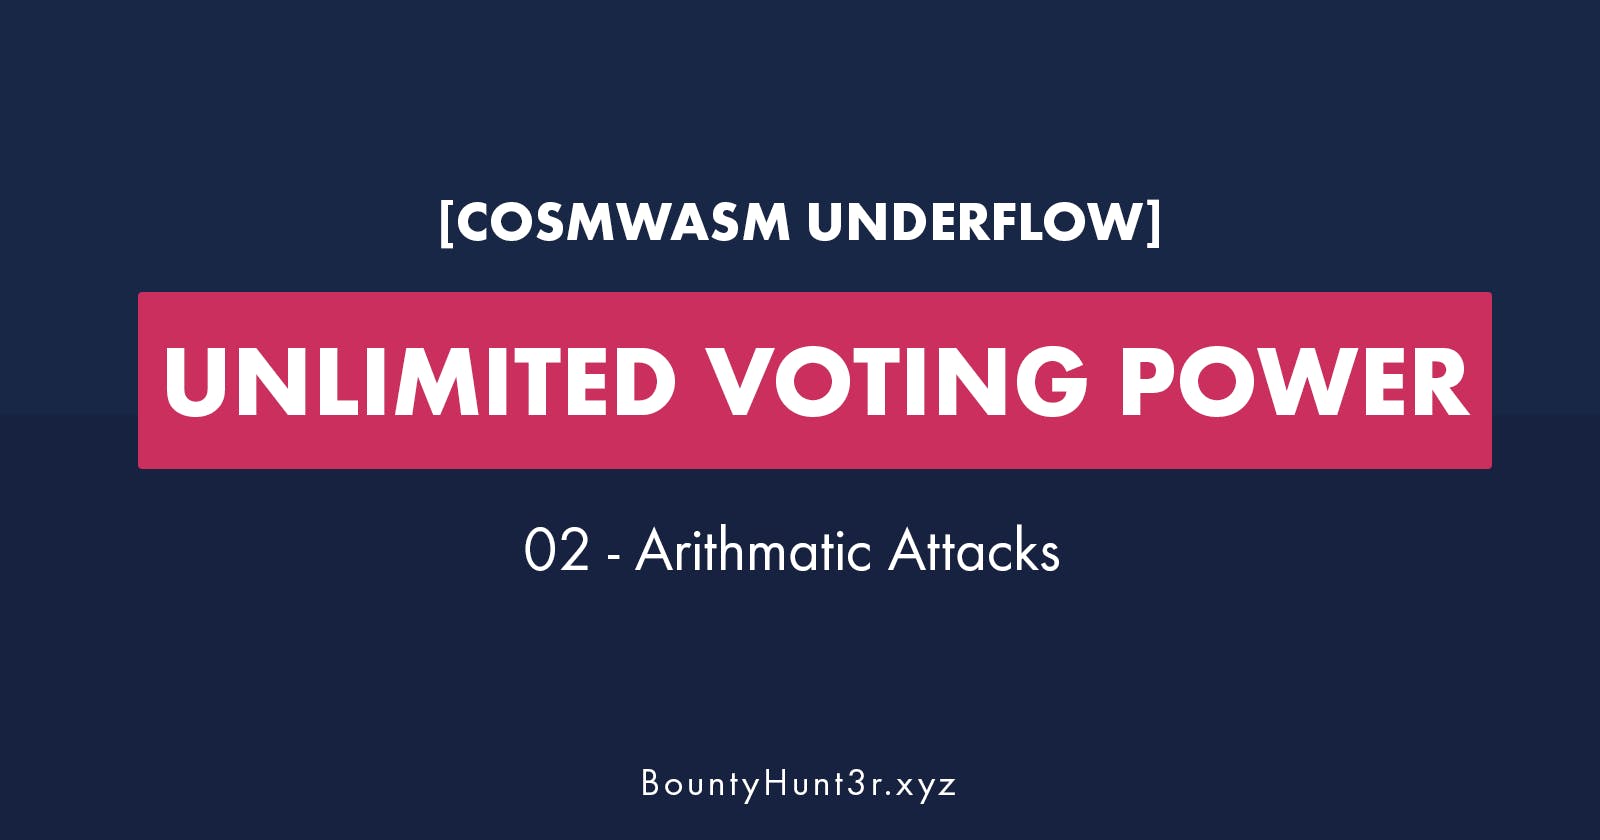 CosmWasm Underflow: Unlimited Voting Power